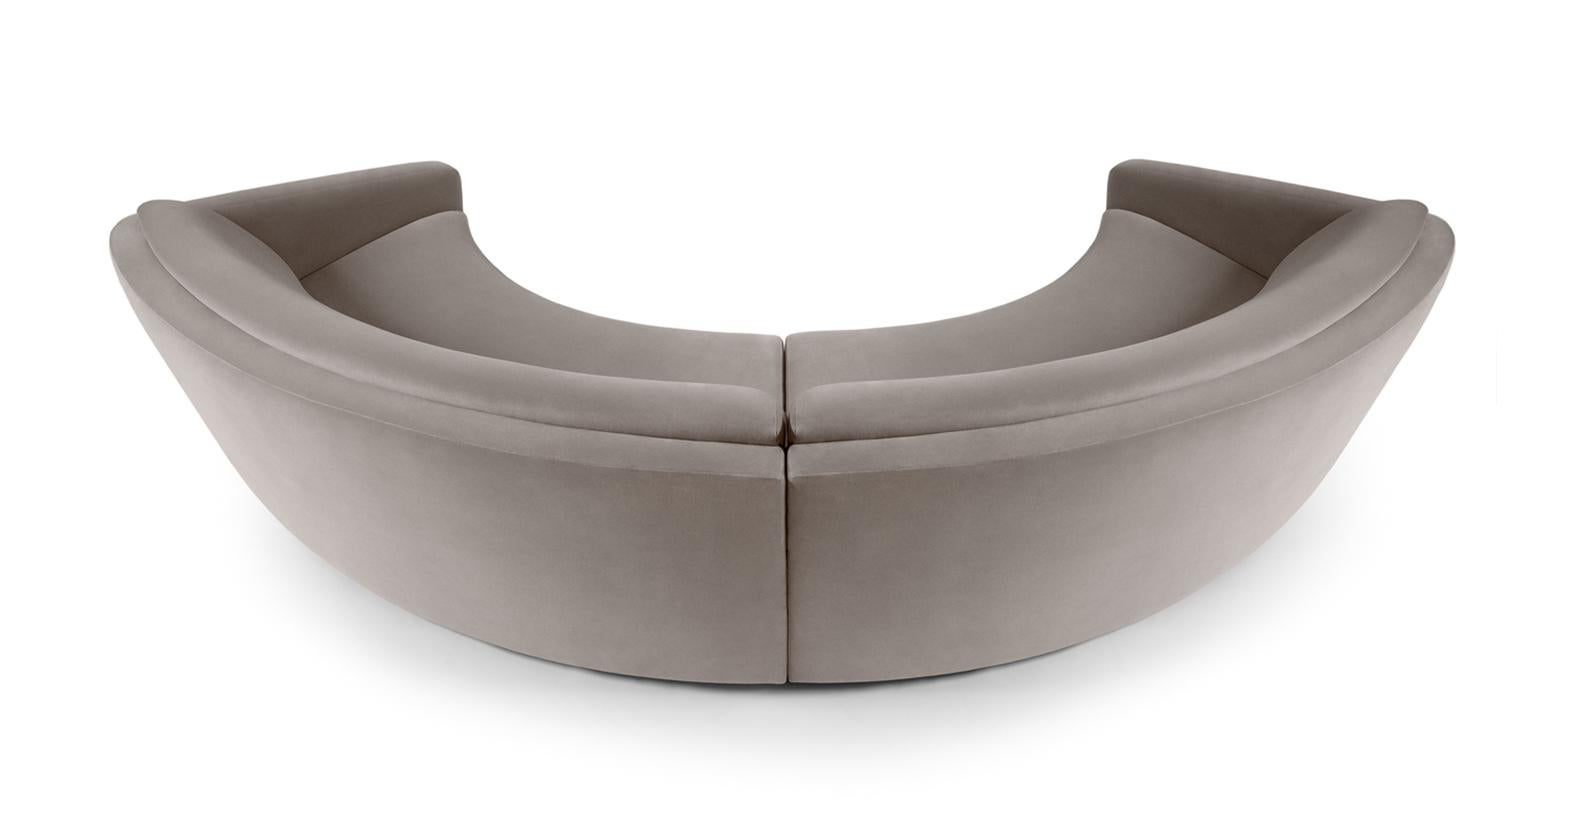 Das handgefertigte Sofa ist die Darstellung des Magnetismus. Mit einer maßgeschneiderten Polsterung aus hellgrauem Baumwollsamt und einem stilvollen Fuß aus gebürstetem Messing ist er meisterhaft mit einer betonten, aber eleganten, geschwungenen